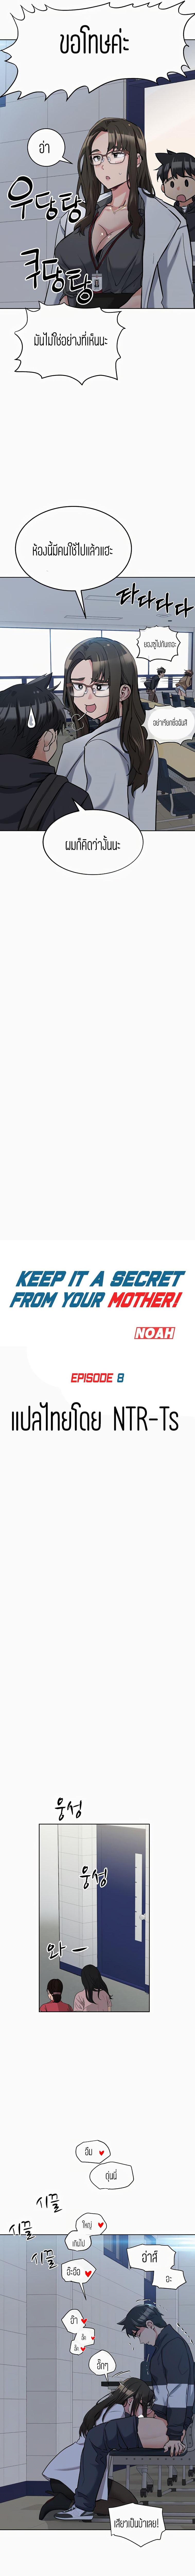 เก็บมันไว้เป็นความลับระหว่างแม่ของเธอนะ! 8 ภาพ 2